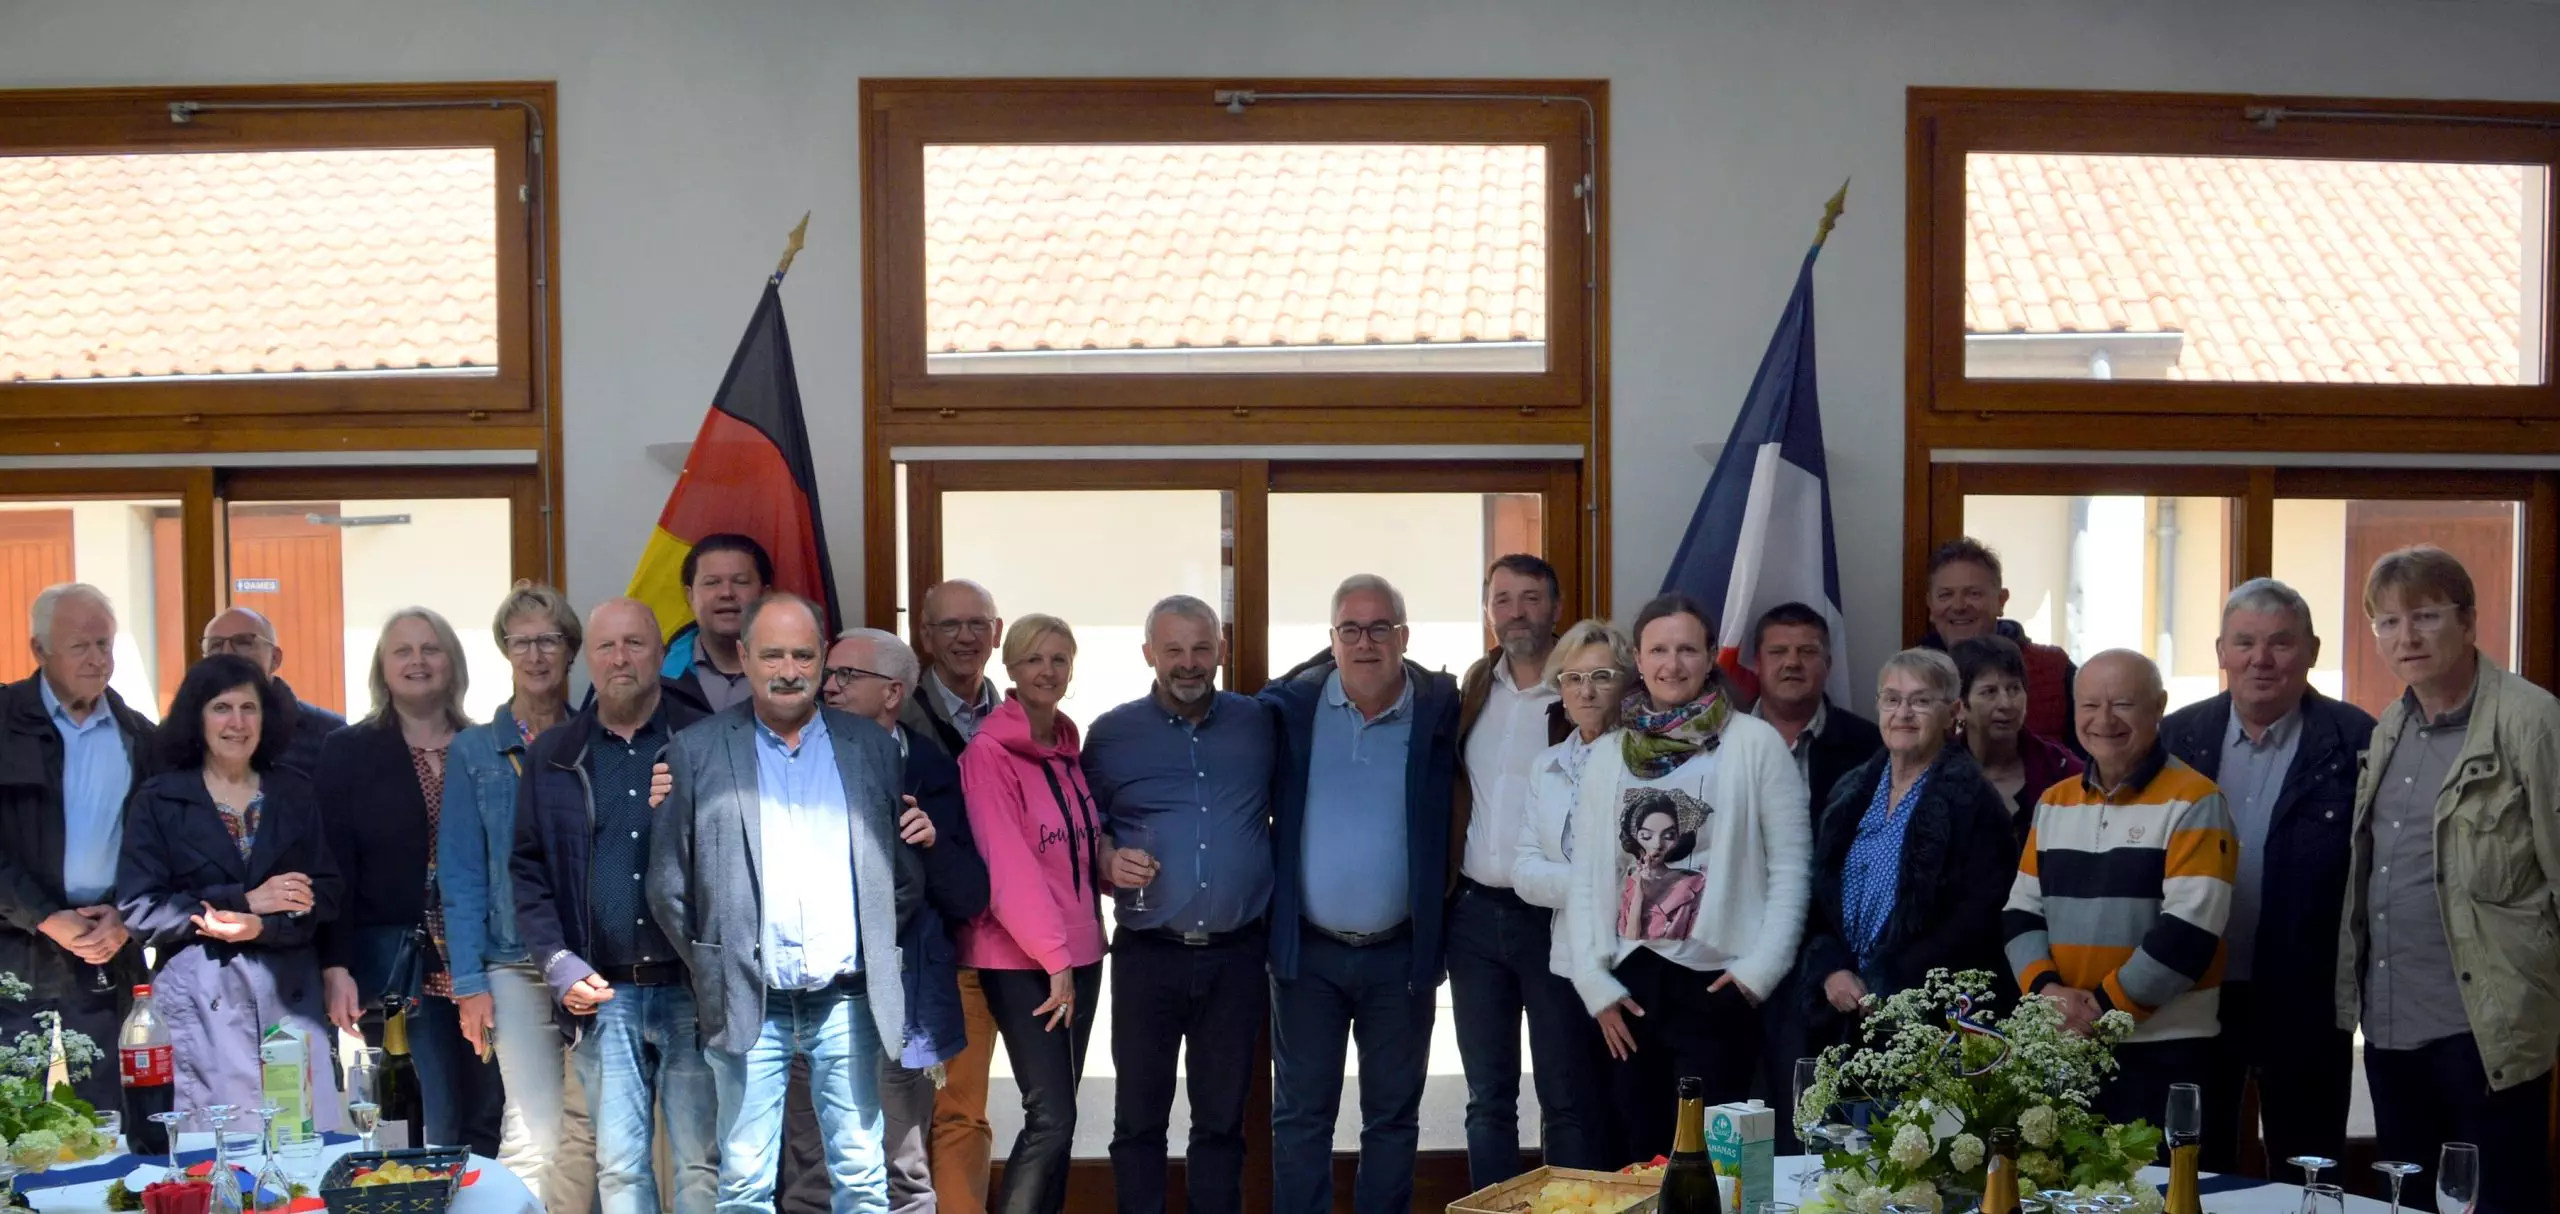 Erstmals nach den Einschränkungen durch die Corona-Pandemie war jetzt wieder eine Delegation aus Olsberg in der französischen Partnerstadt Fruges zu Gast. Bildnachweis: Stadt Olsberg